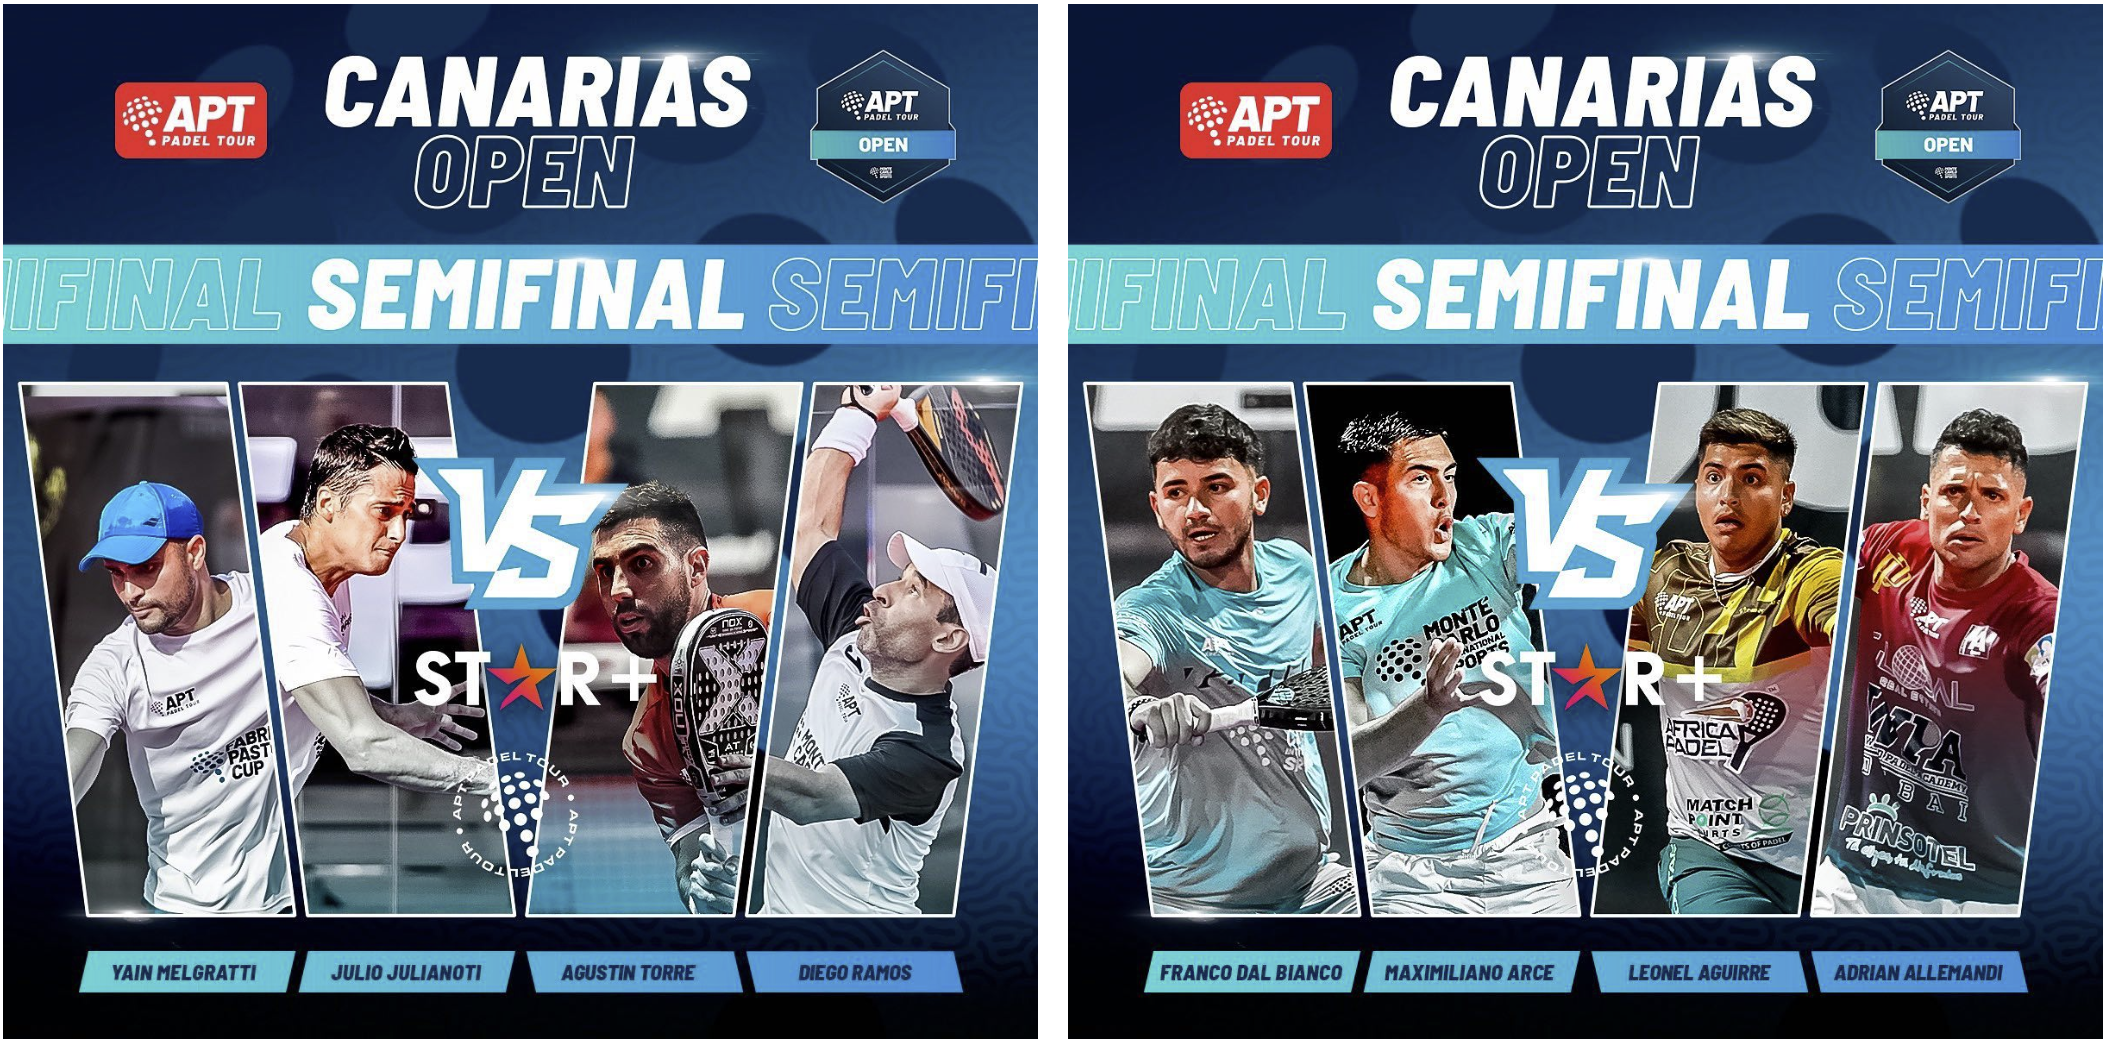 APT Canarias Open – Le semifinali in diretta